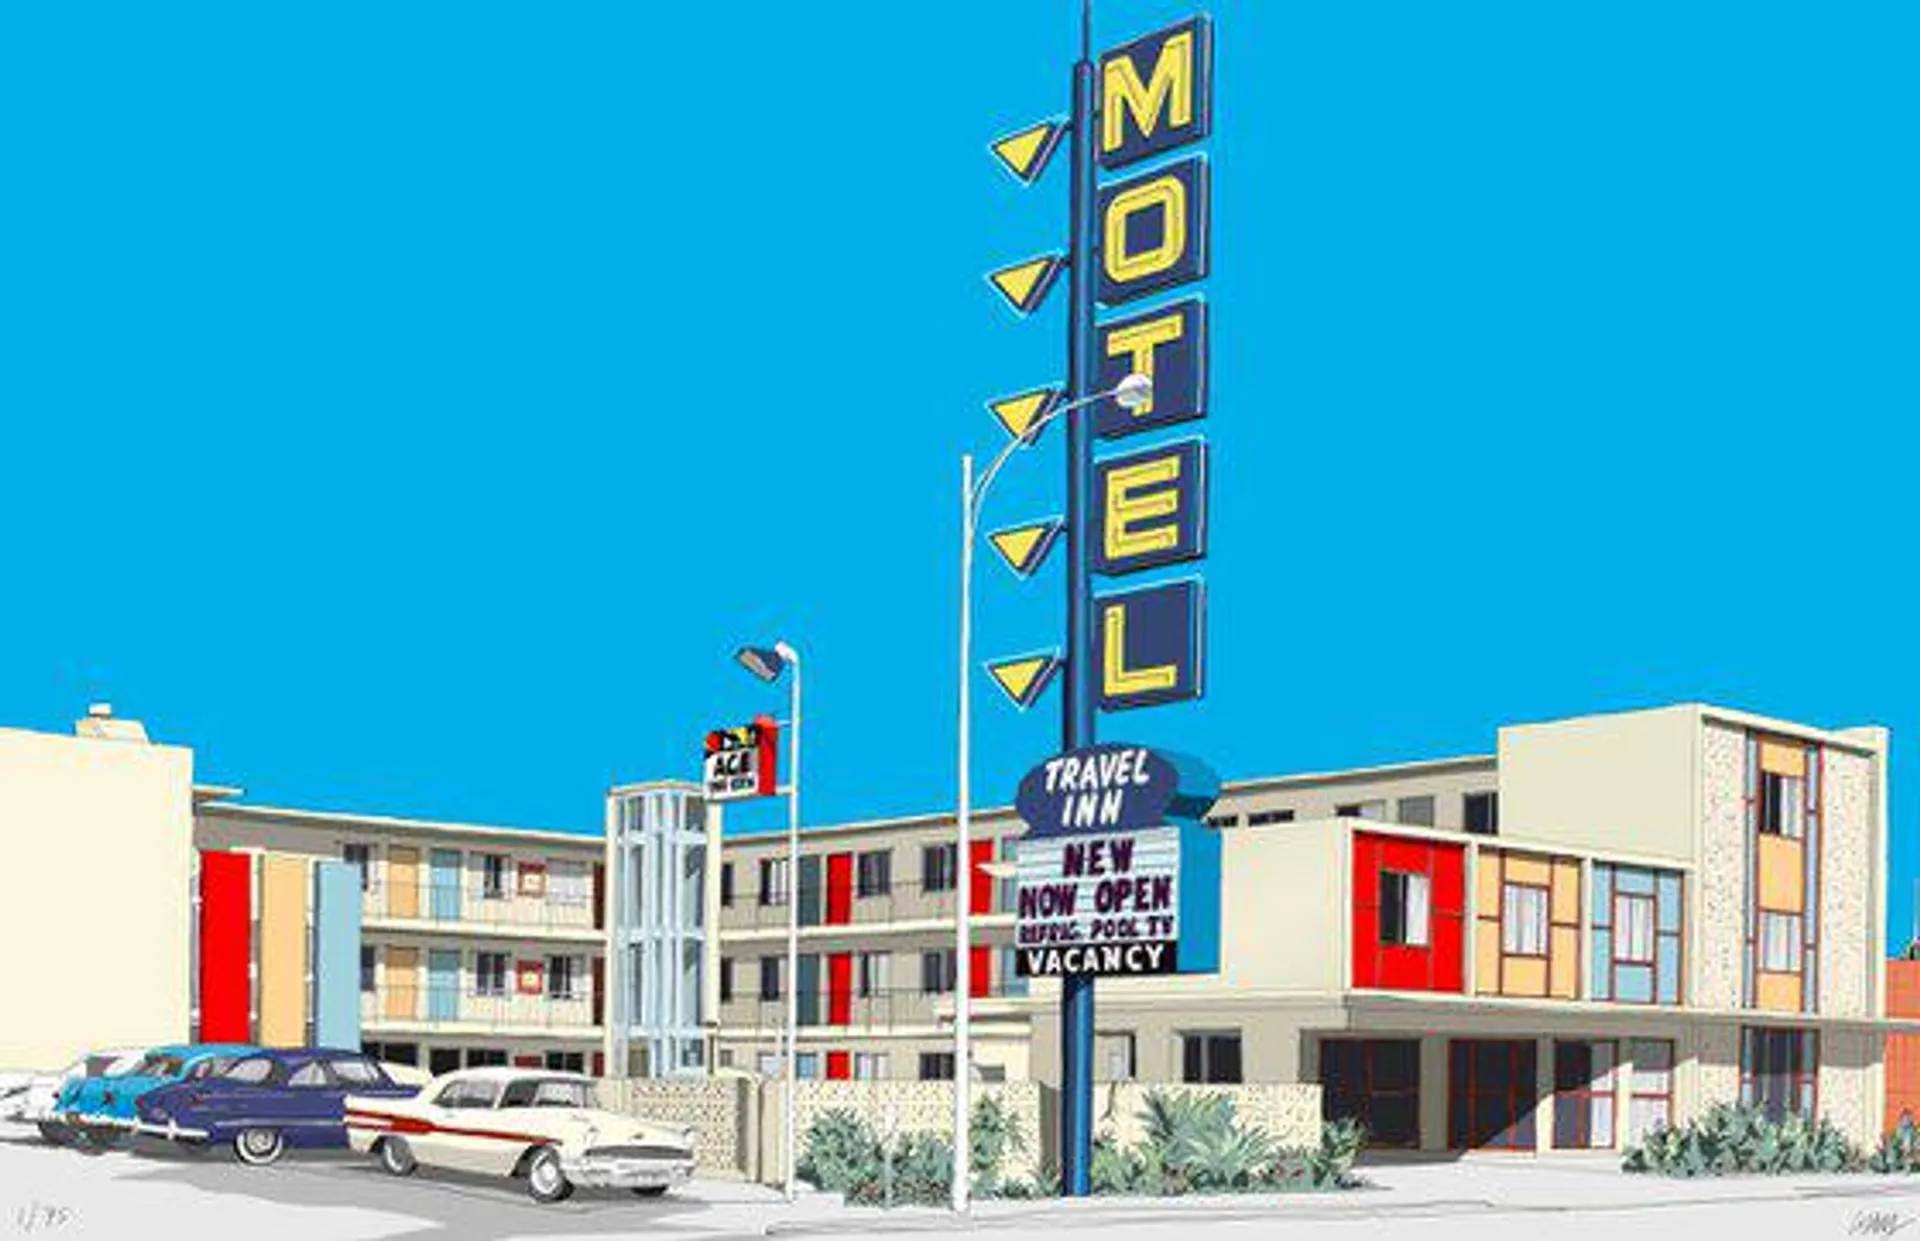 Travel Inn Motel (2022)